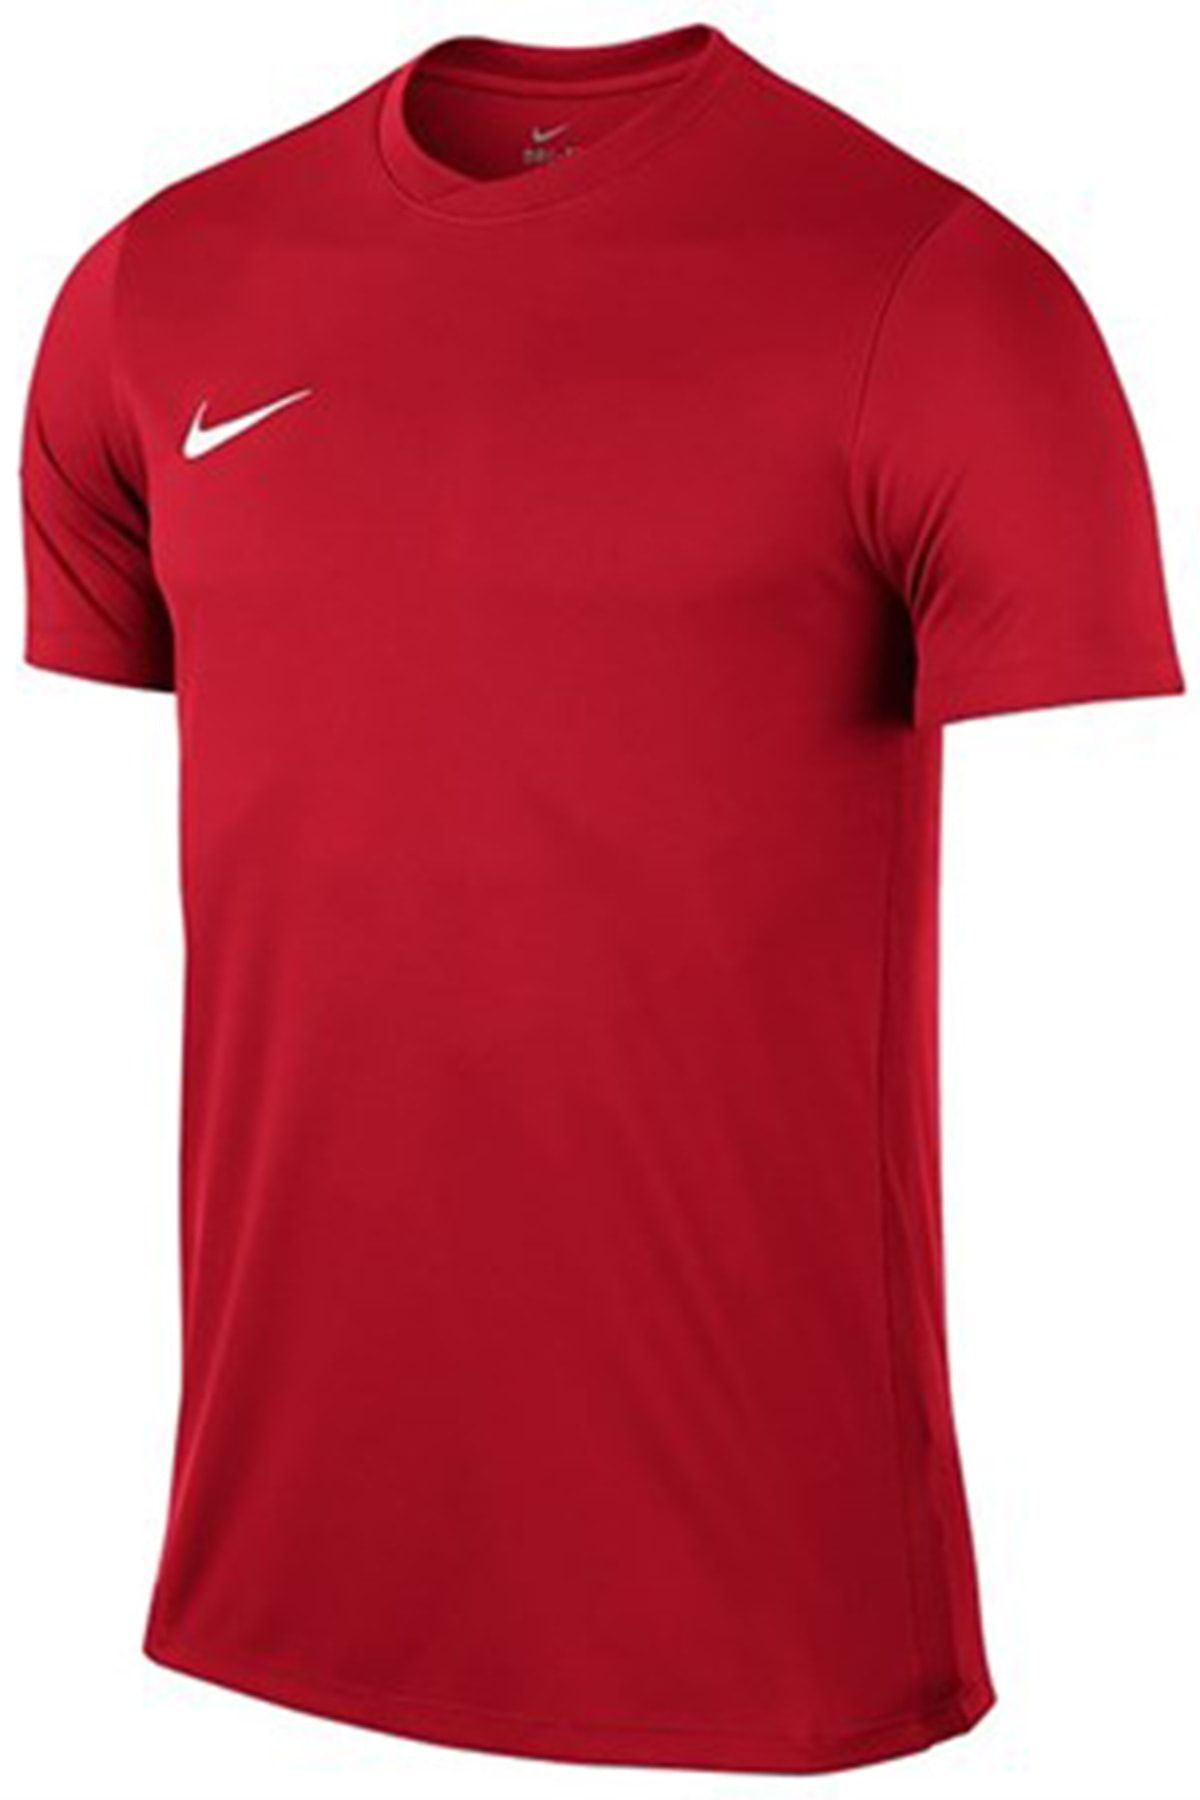 Nike Erkek Spor T-Shirt - 725891-657-M